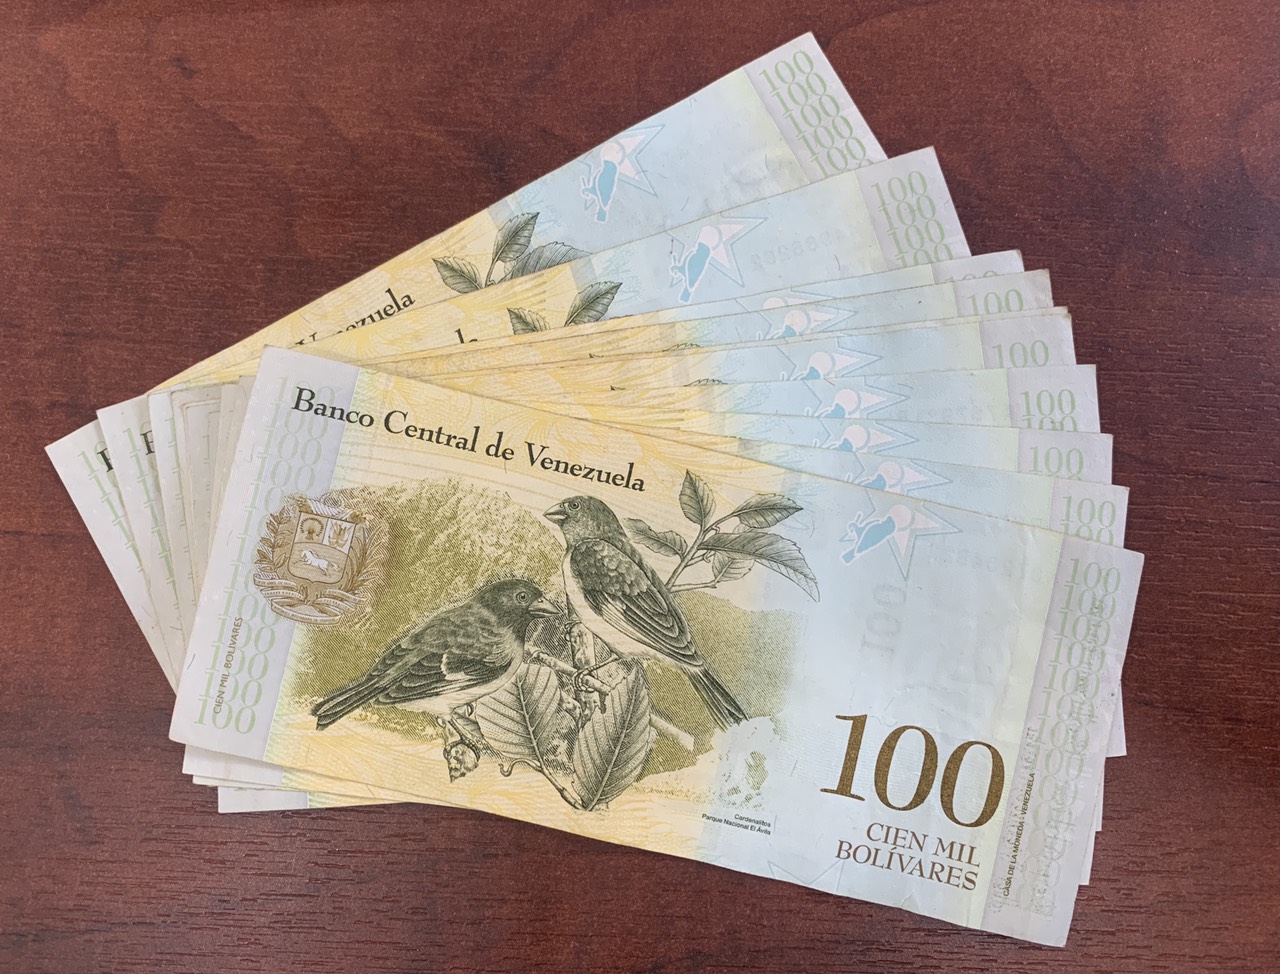 Tiền cổ nước Venezuela mệnh giá 100 hình 2 chú chim - tặng phơi nylon bảo quản tiền